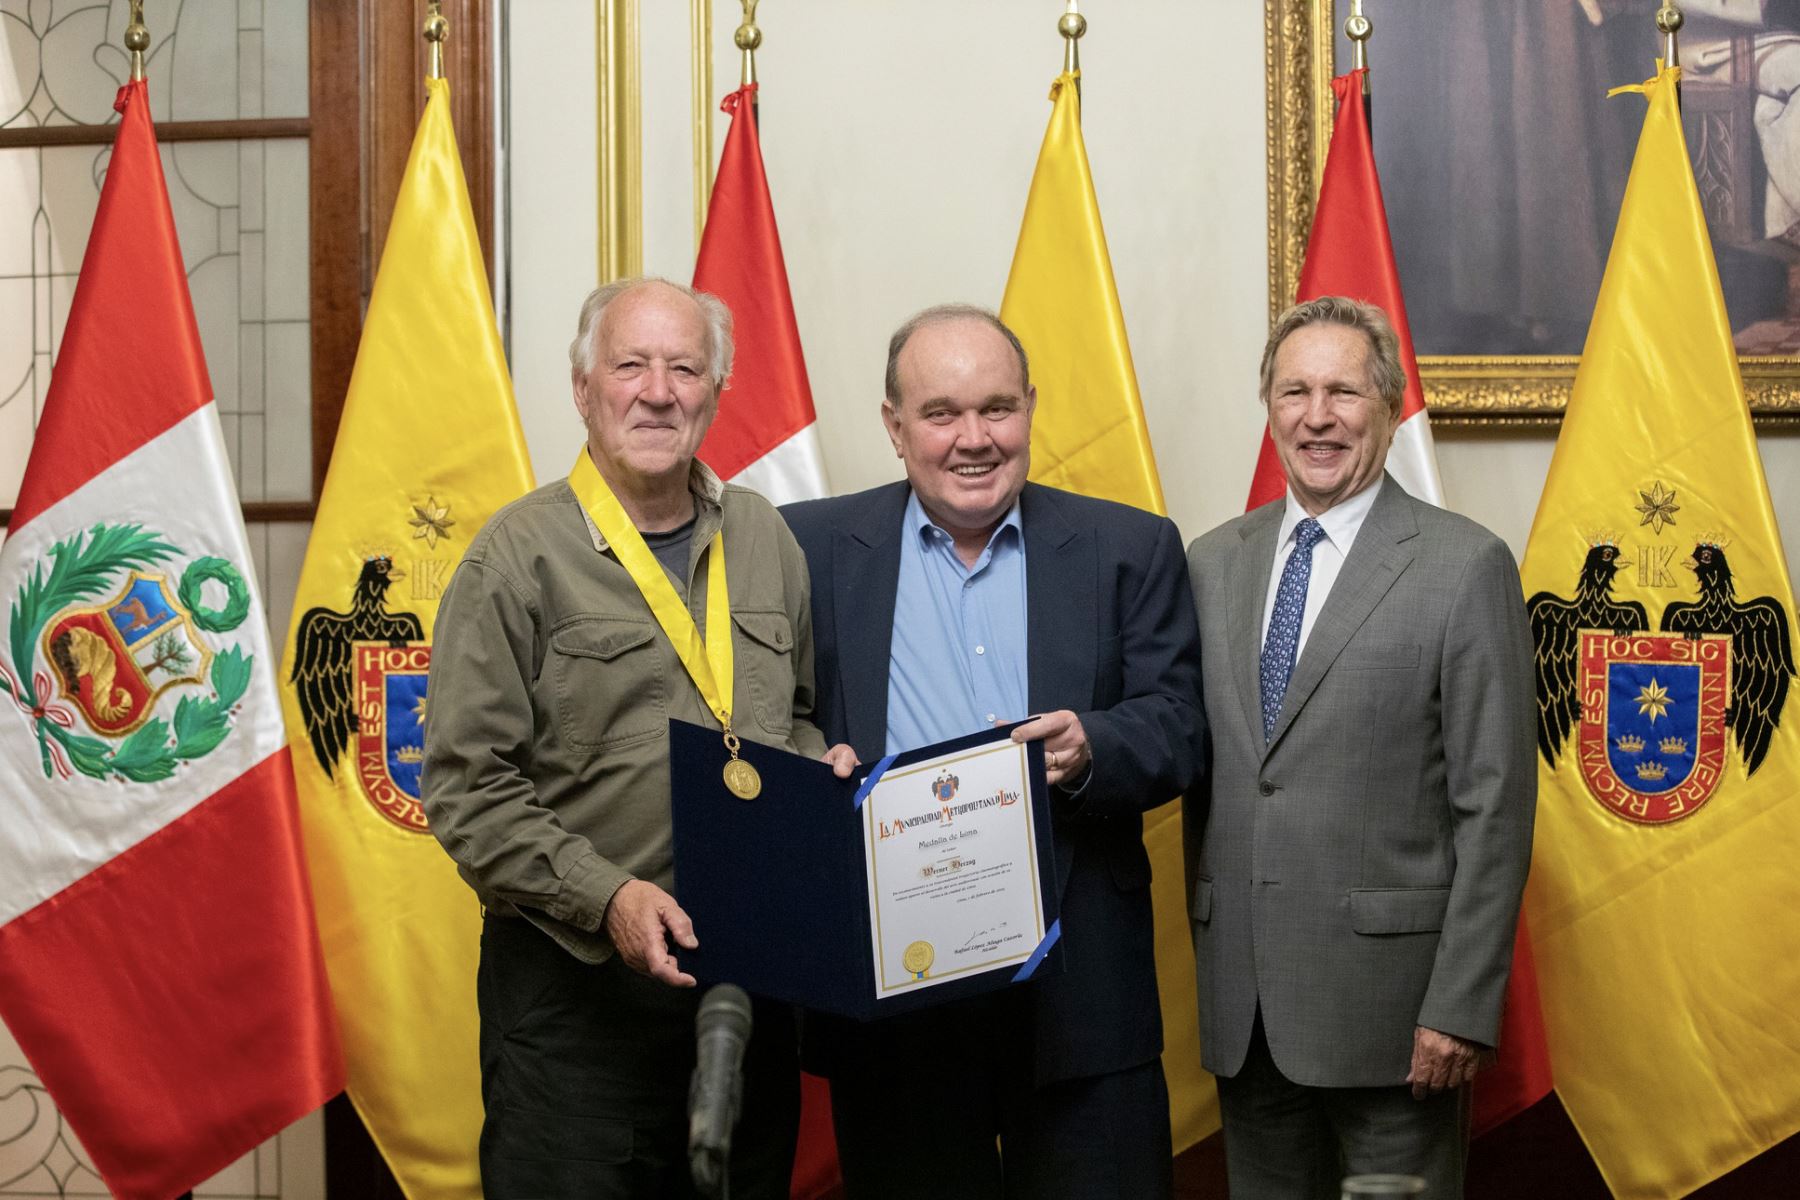 El día de ayer el galardonado cineasta alemán Werner Herzog, fue condecorado por el alcalde Rafael López Aliaga con la Medalla de Lima, por su renombrada trayectoria y aporte al cine nacional.

Foto: ANDINA/MuniLima